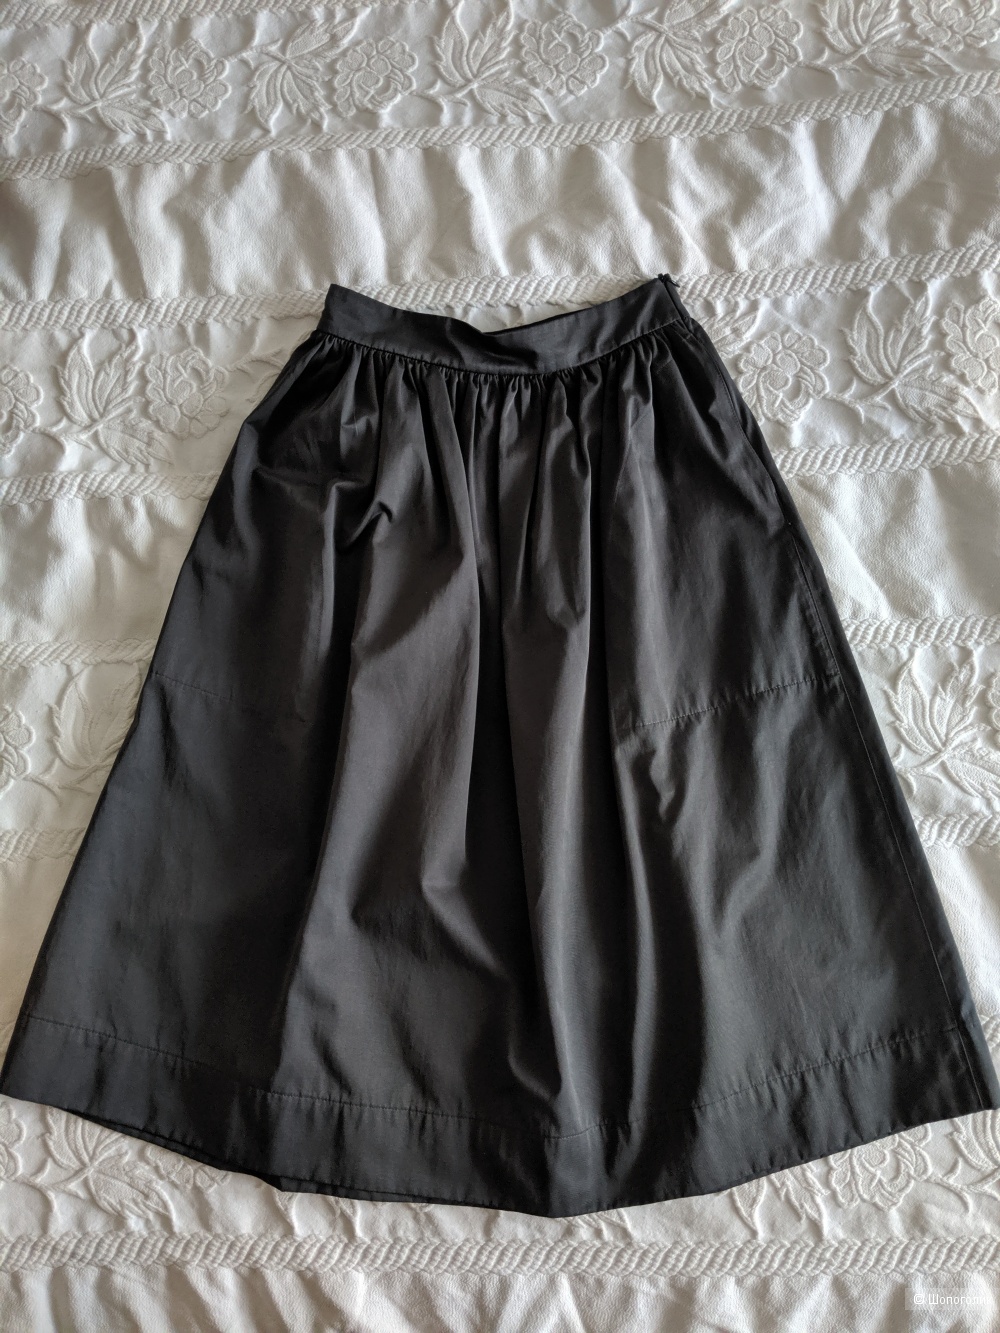 Комплект из юбки Zara размер xs и топа Topshop uk10